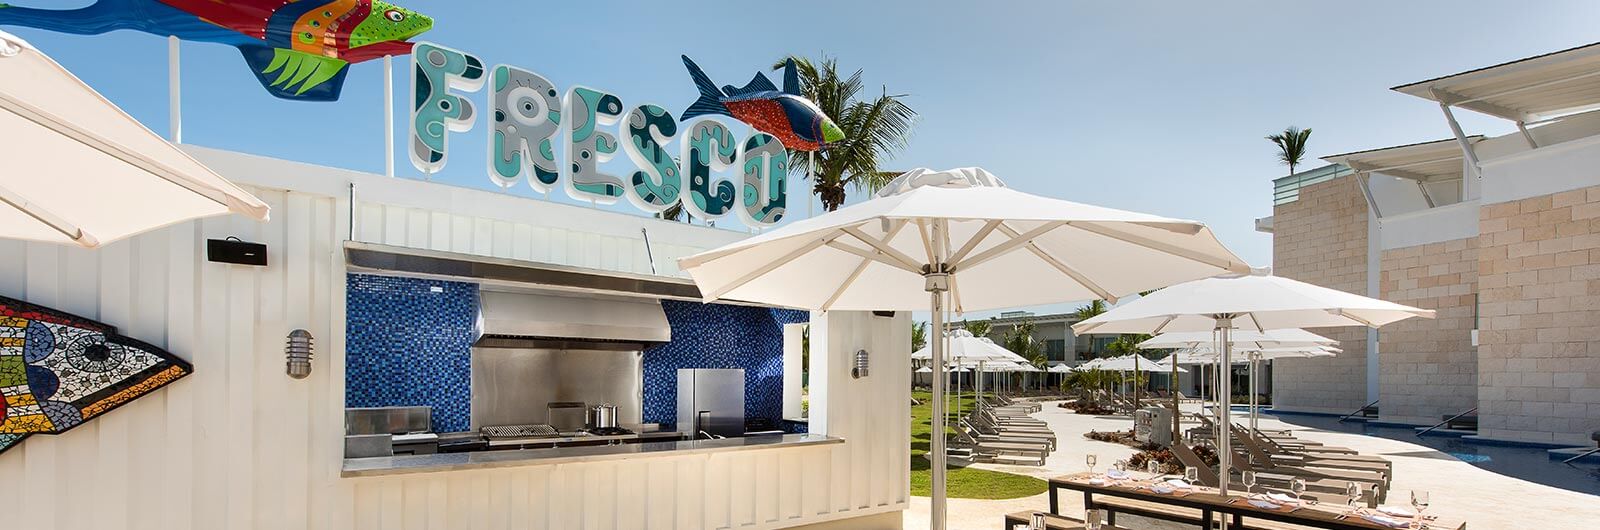 Nickelodeon Resort Punta Cana Restaurants and Bars - Fresco